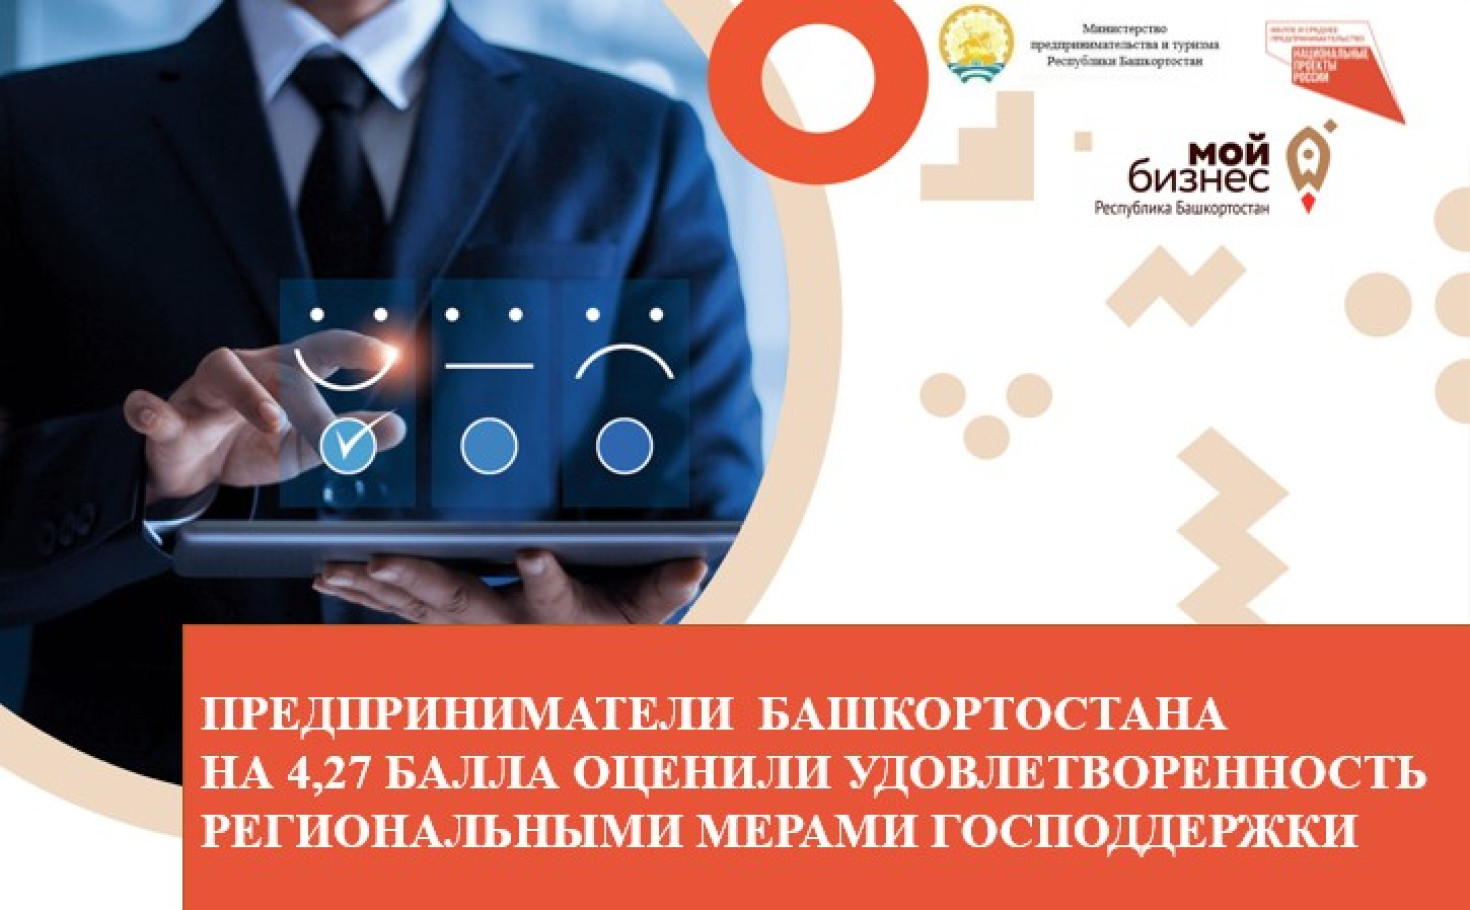 Предприниматели Башкортостана на 4,27 балла оценили удовлетворенность региональными мерами господдержки